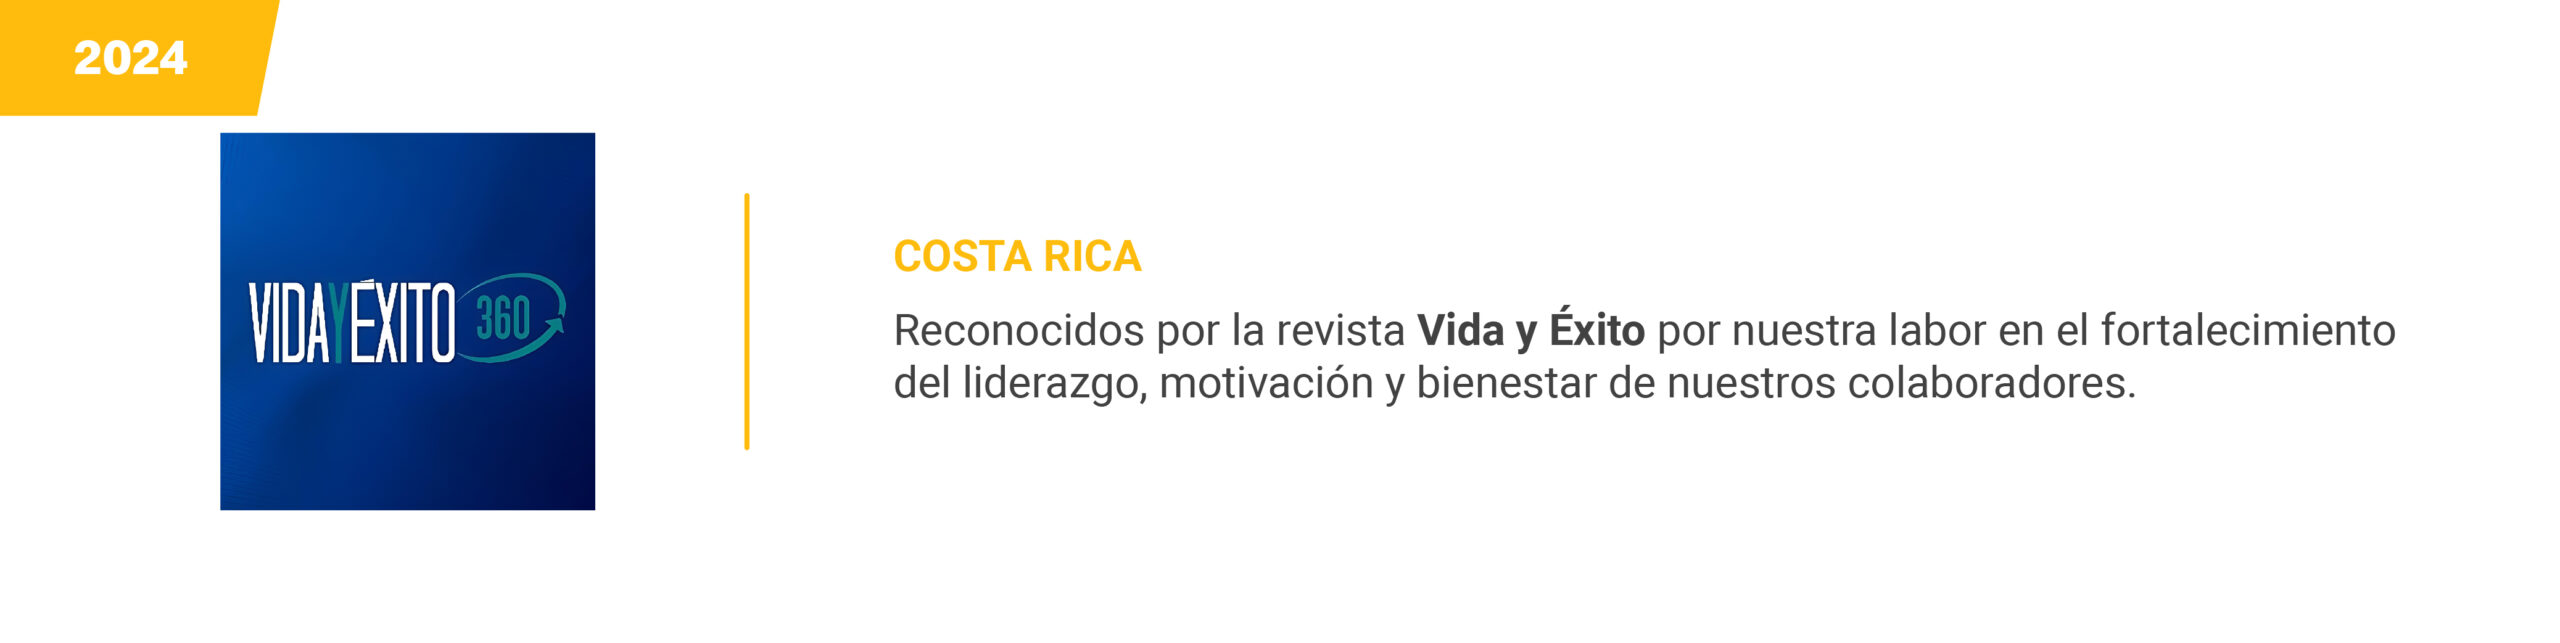 Vida y exito - Costa Rica - 2024